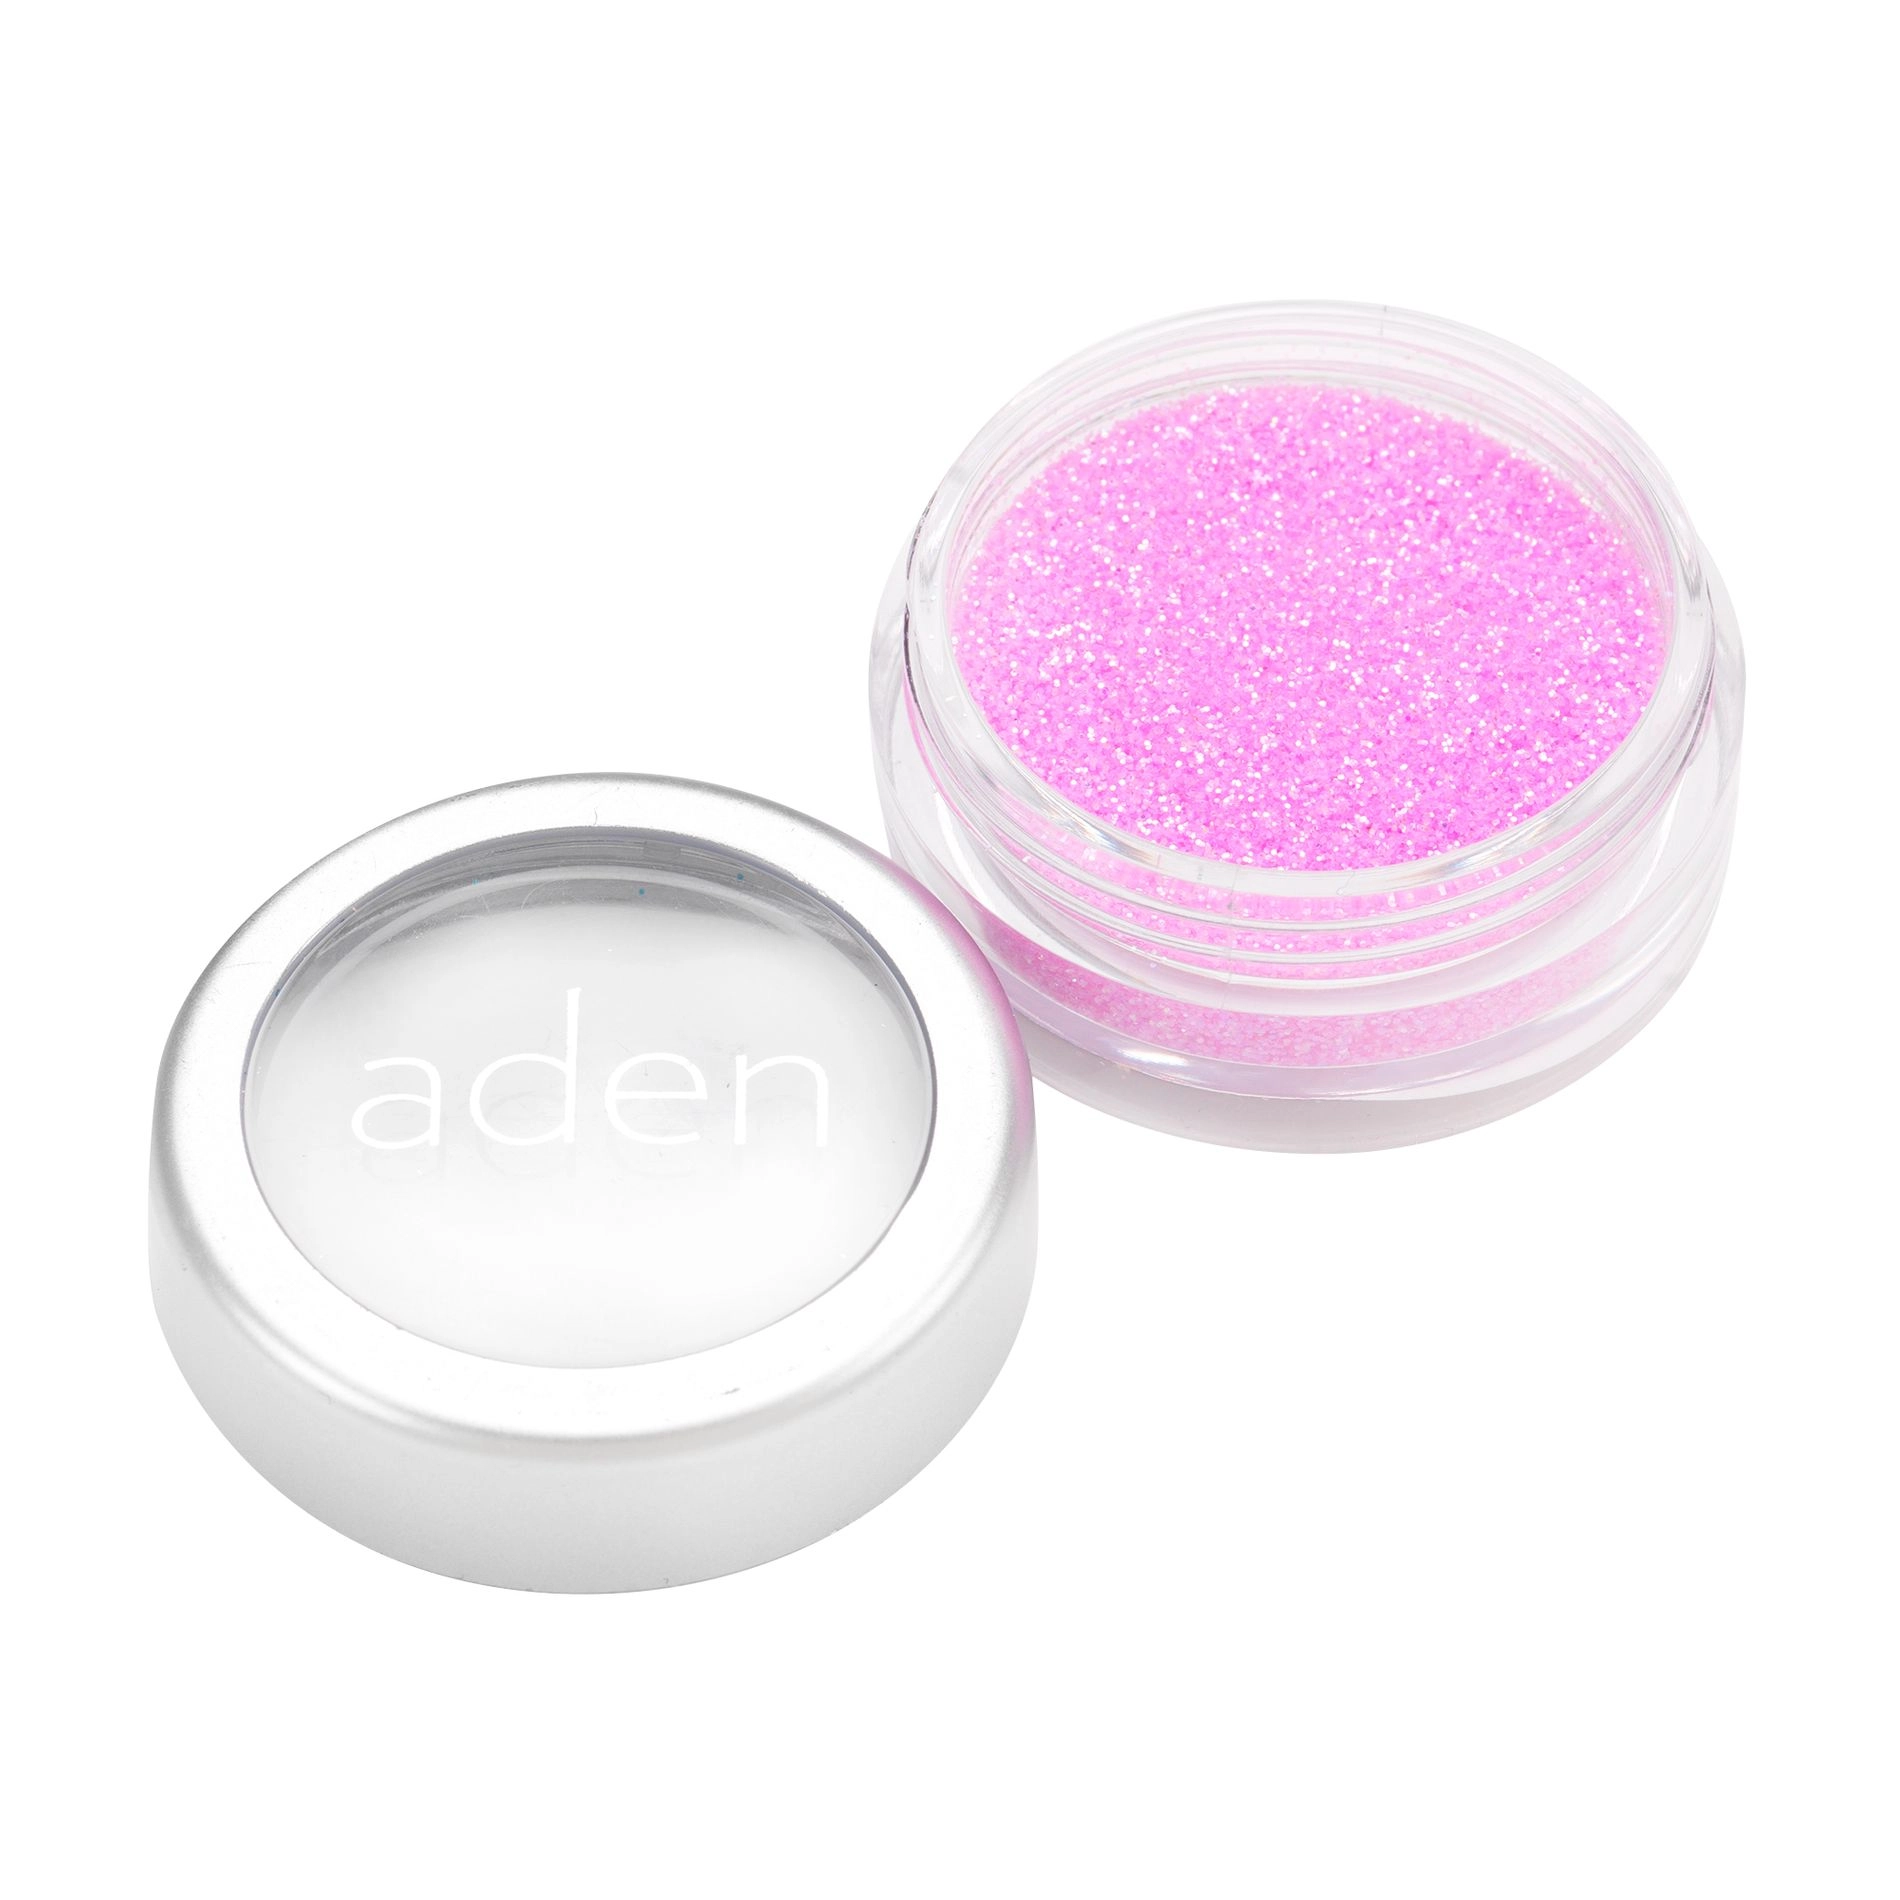 Aden Рассыпчатый глиттер для лица Glitter Powder 09 Orchid, 5 г - фото N1